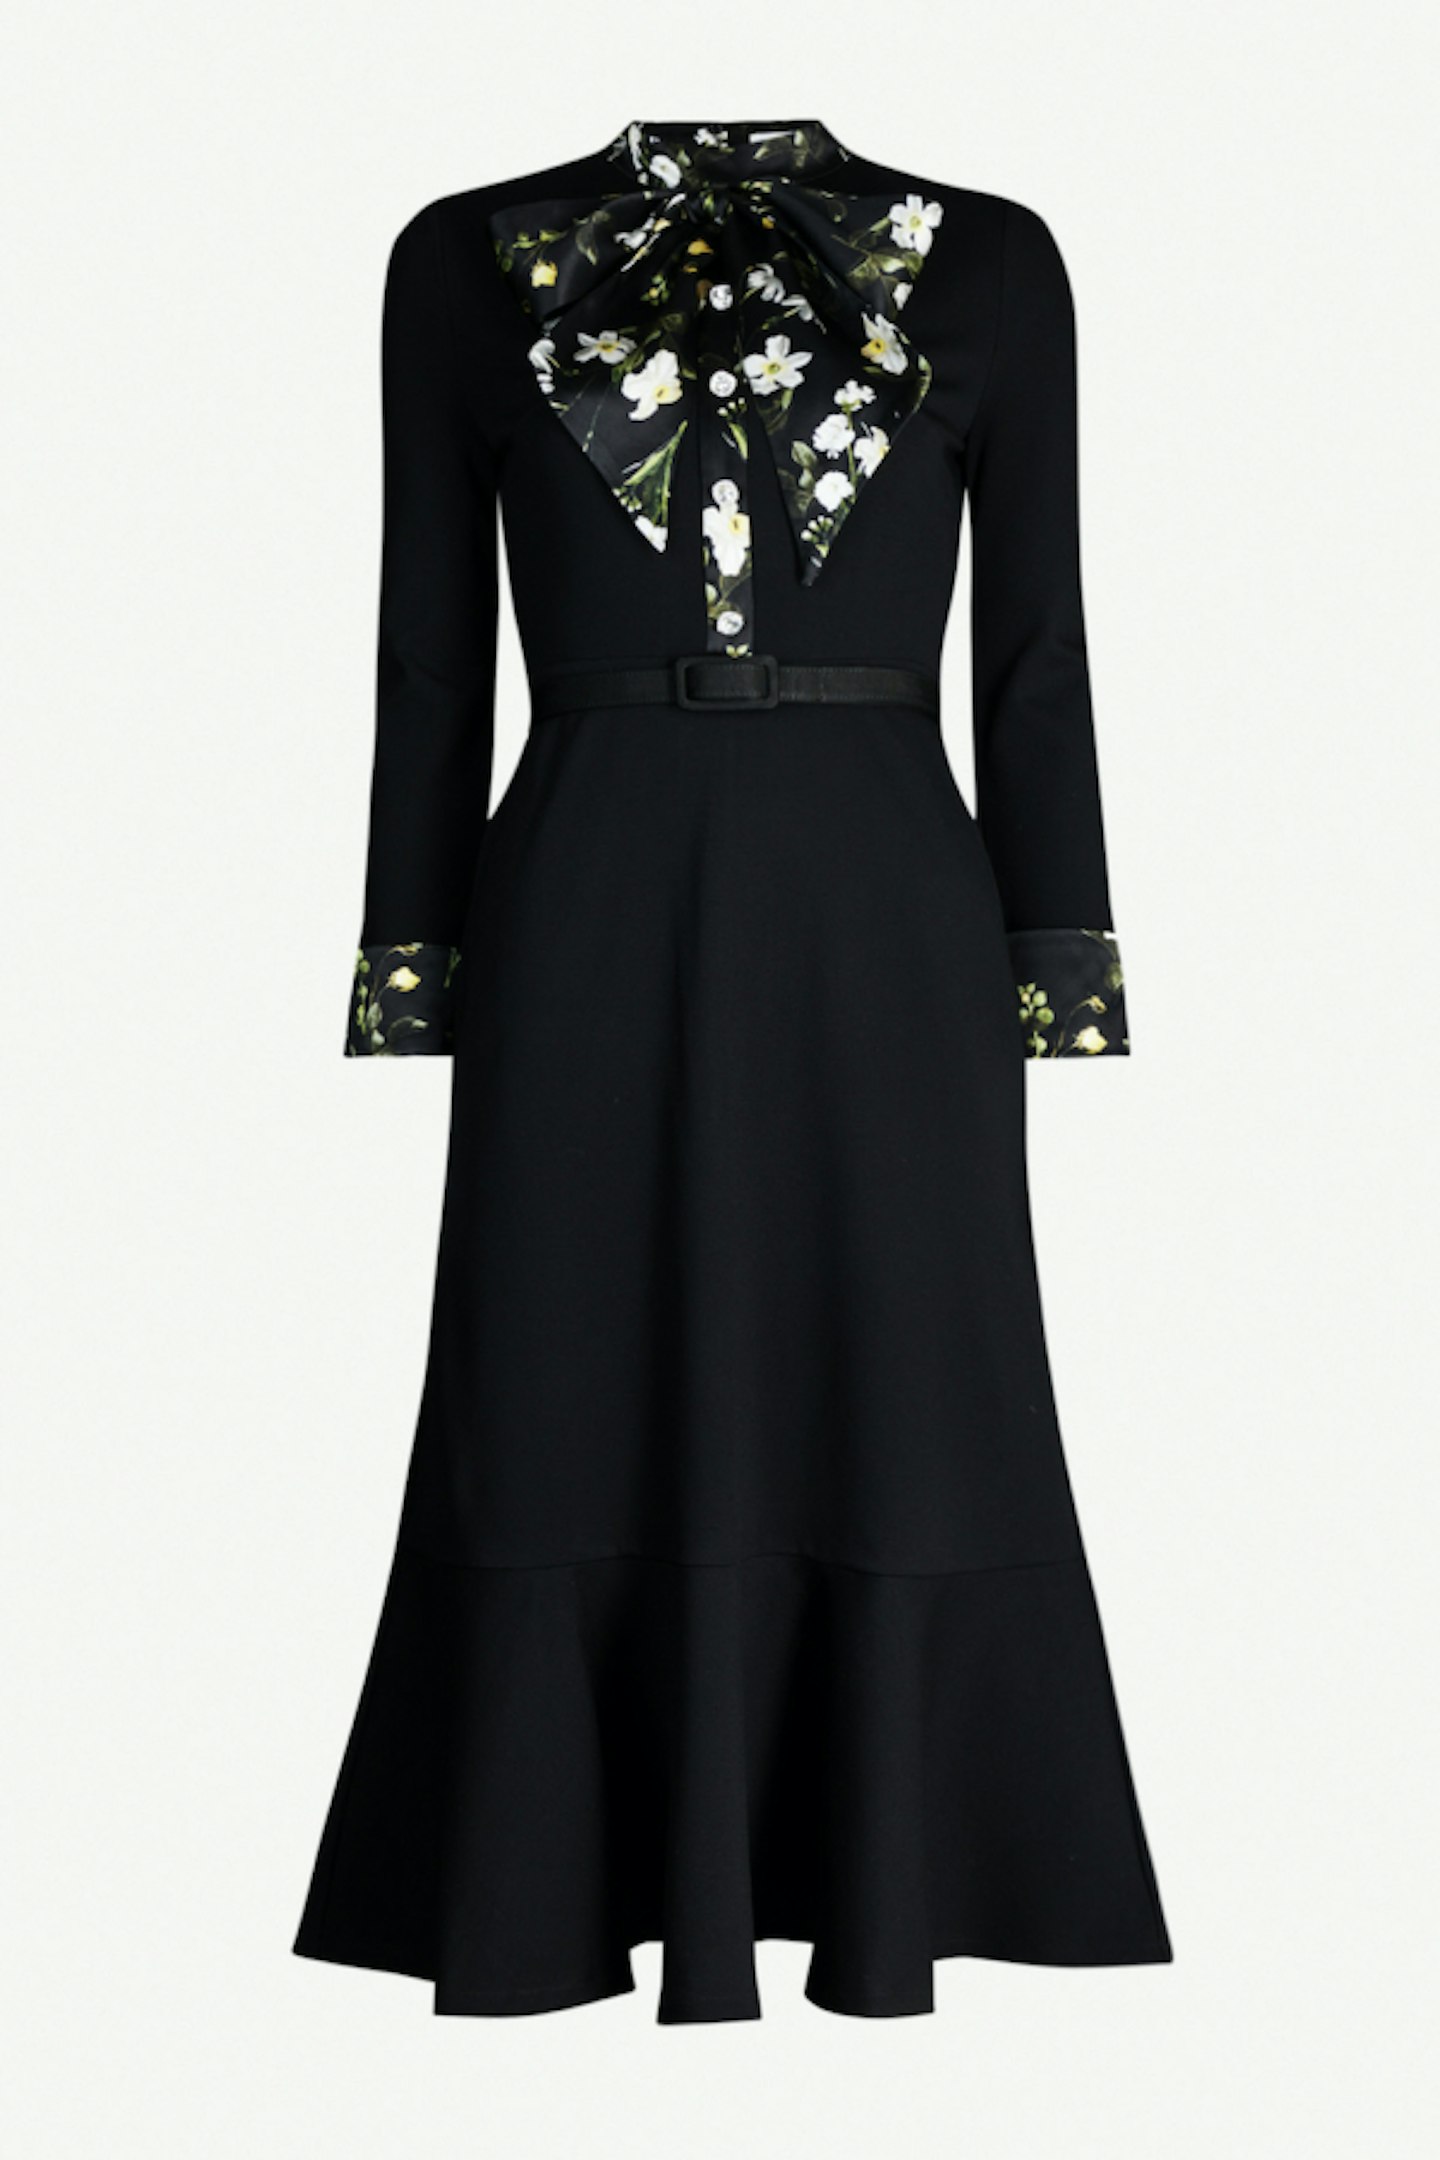 Erdem, Floral Trimmed Dress, Rent From £65